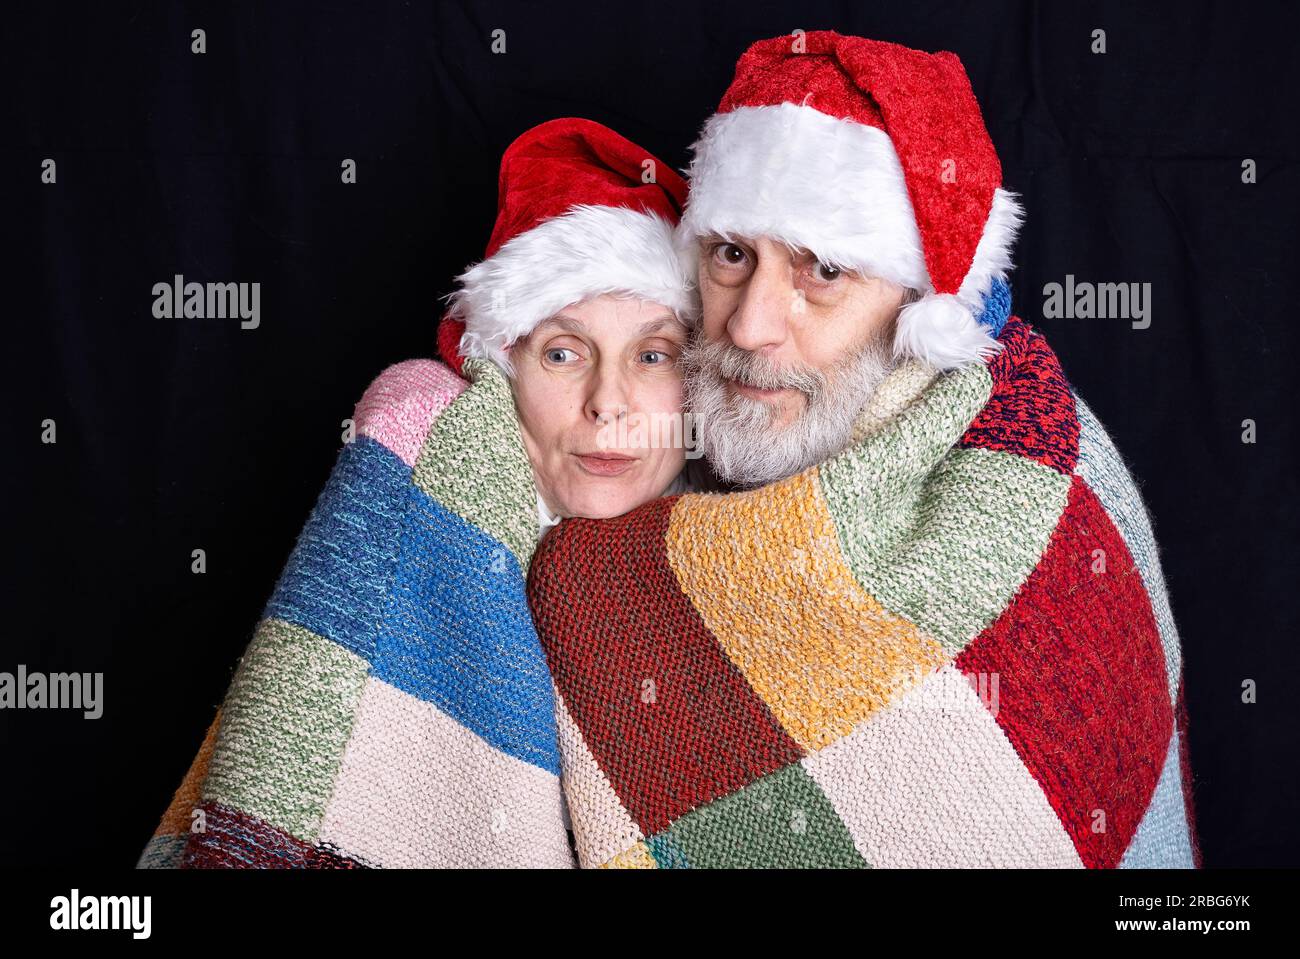 Ritratto di un uomo adulto con barba bianca e una donna mascherata in Babbo Natale per le vacanze di Natale e Capodanno Foto Stock